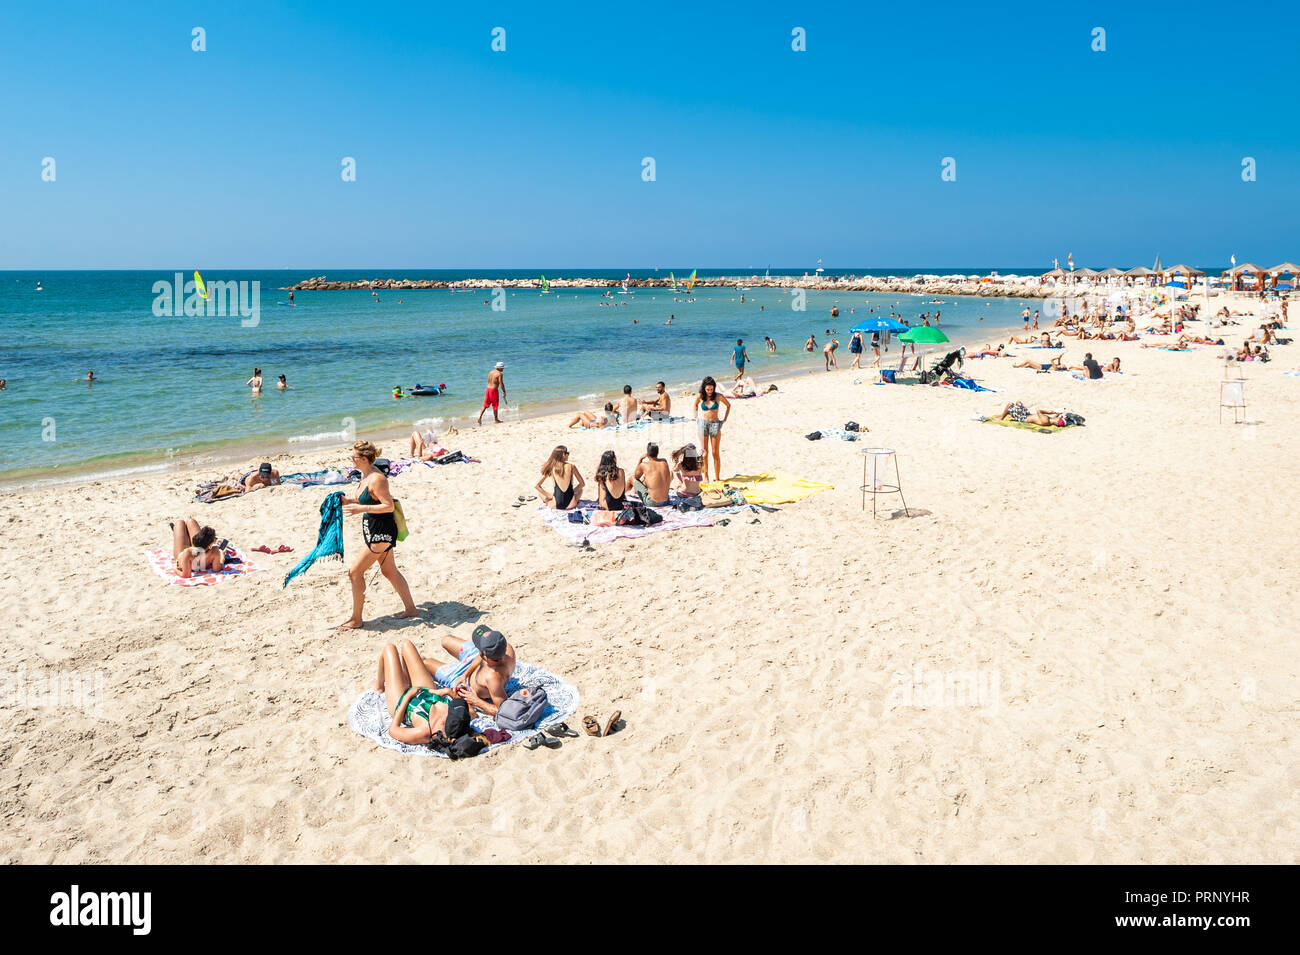 Israel, Tel Aviv - 24 September 2018: People enjoy the beach in late september Stock Photo